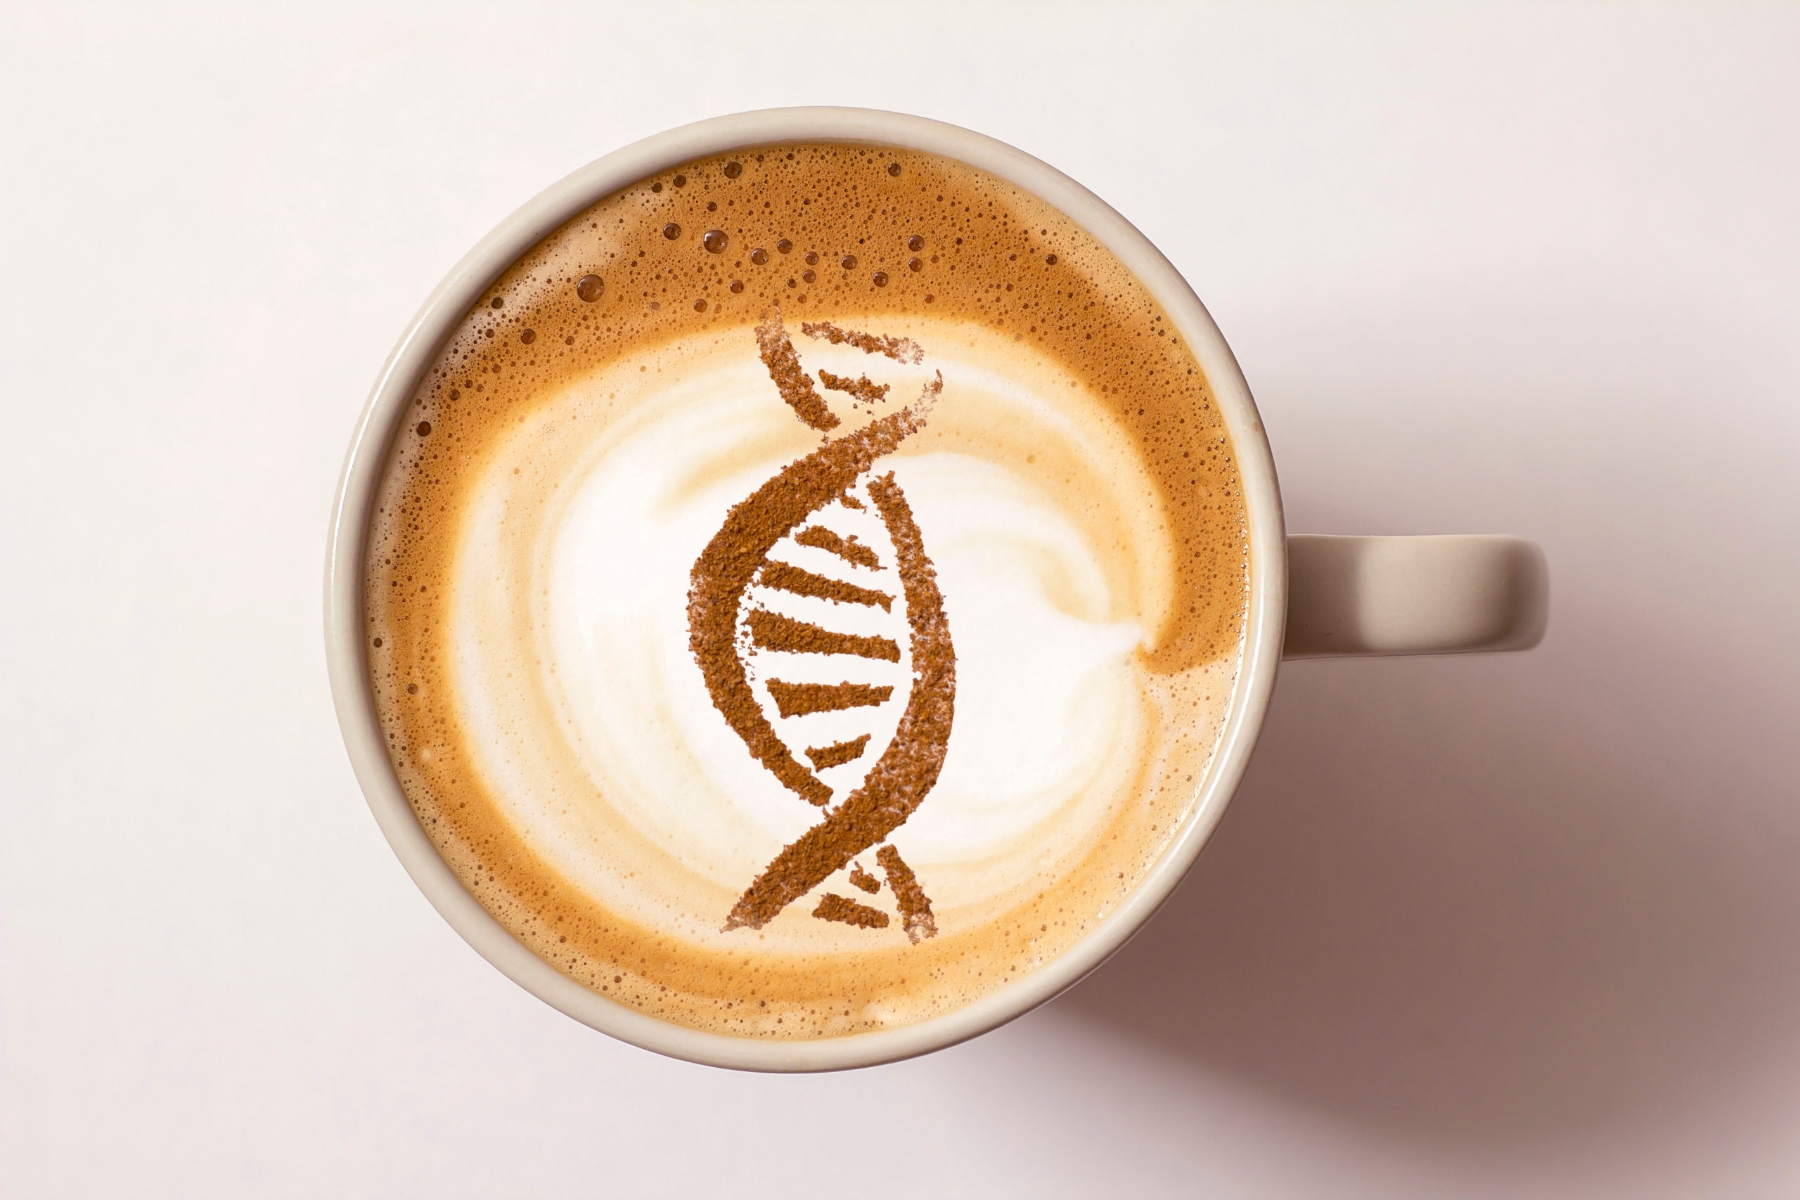 Καφές γονίδια: Η γενετική καθορίζει αν ο καφές είναι καλός ή κακός για εσάς;